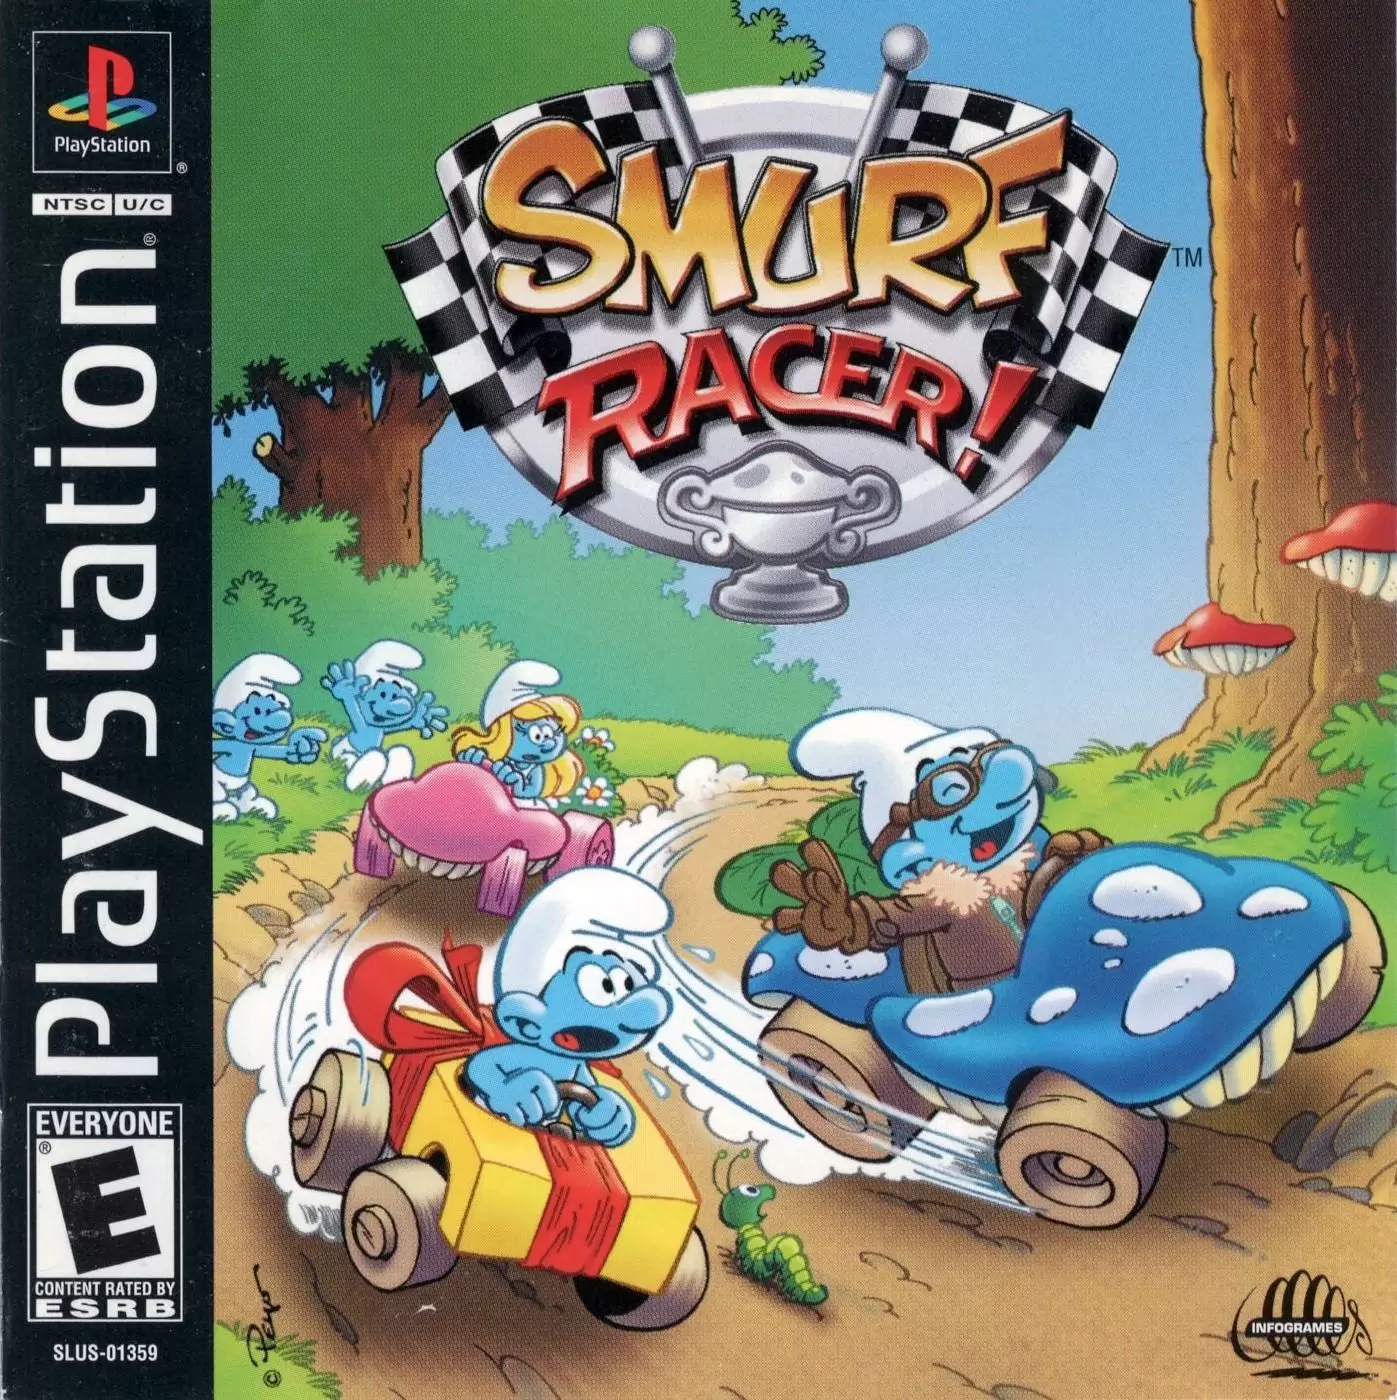 Playstation games - Smurf Racer